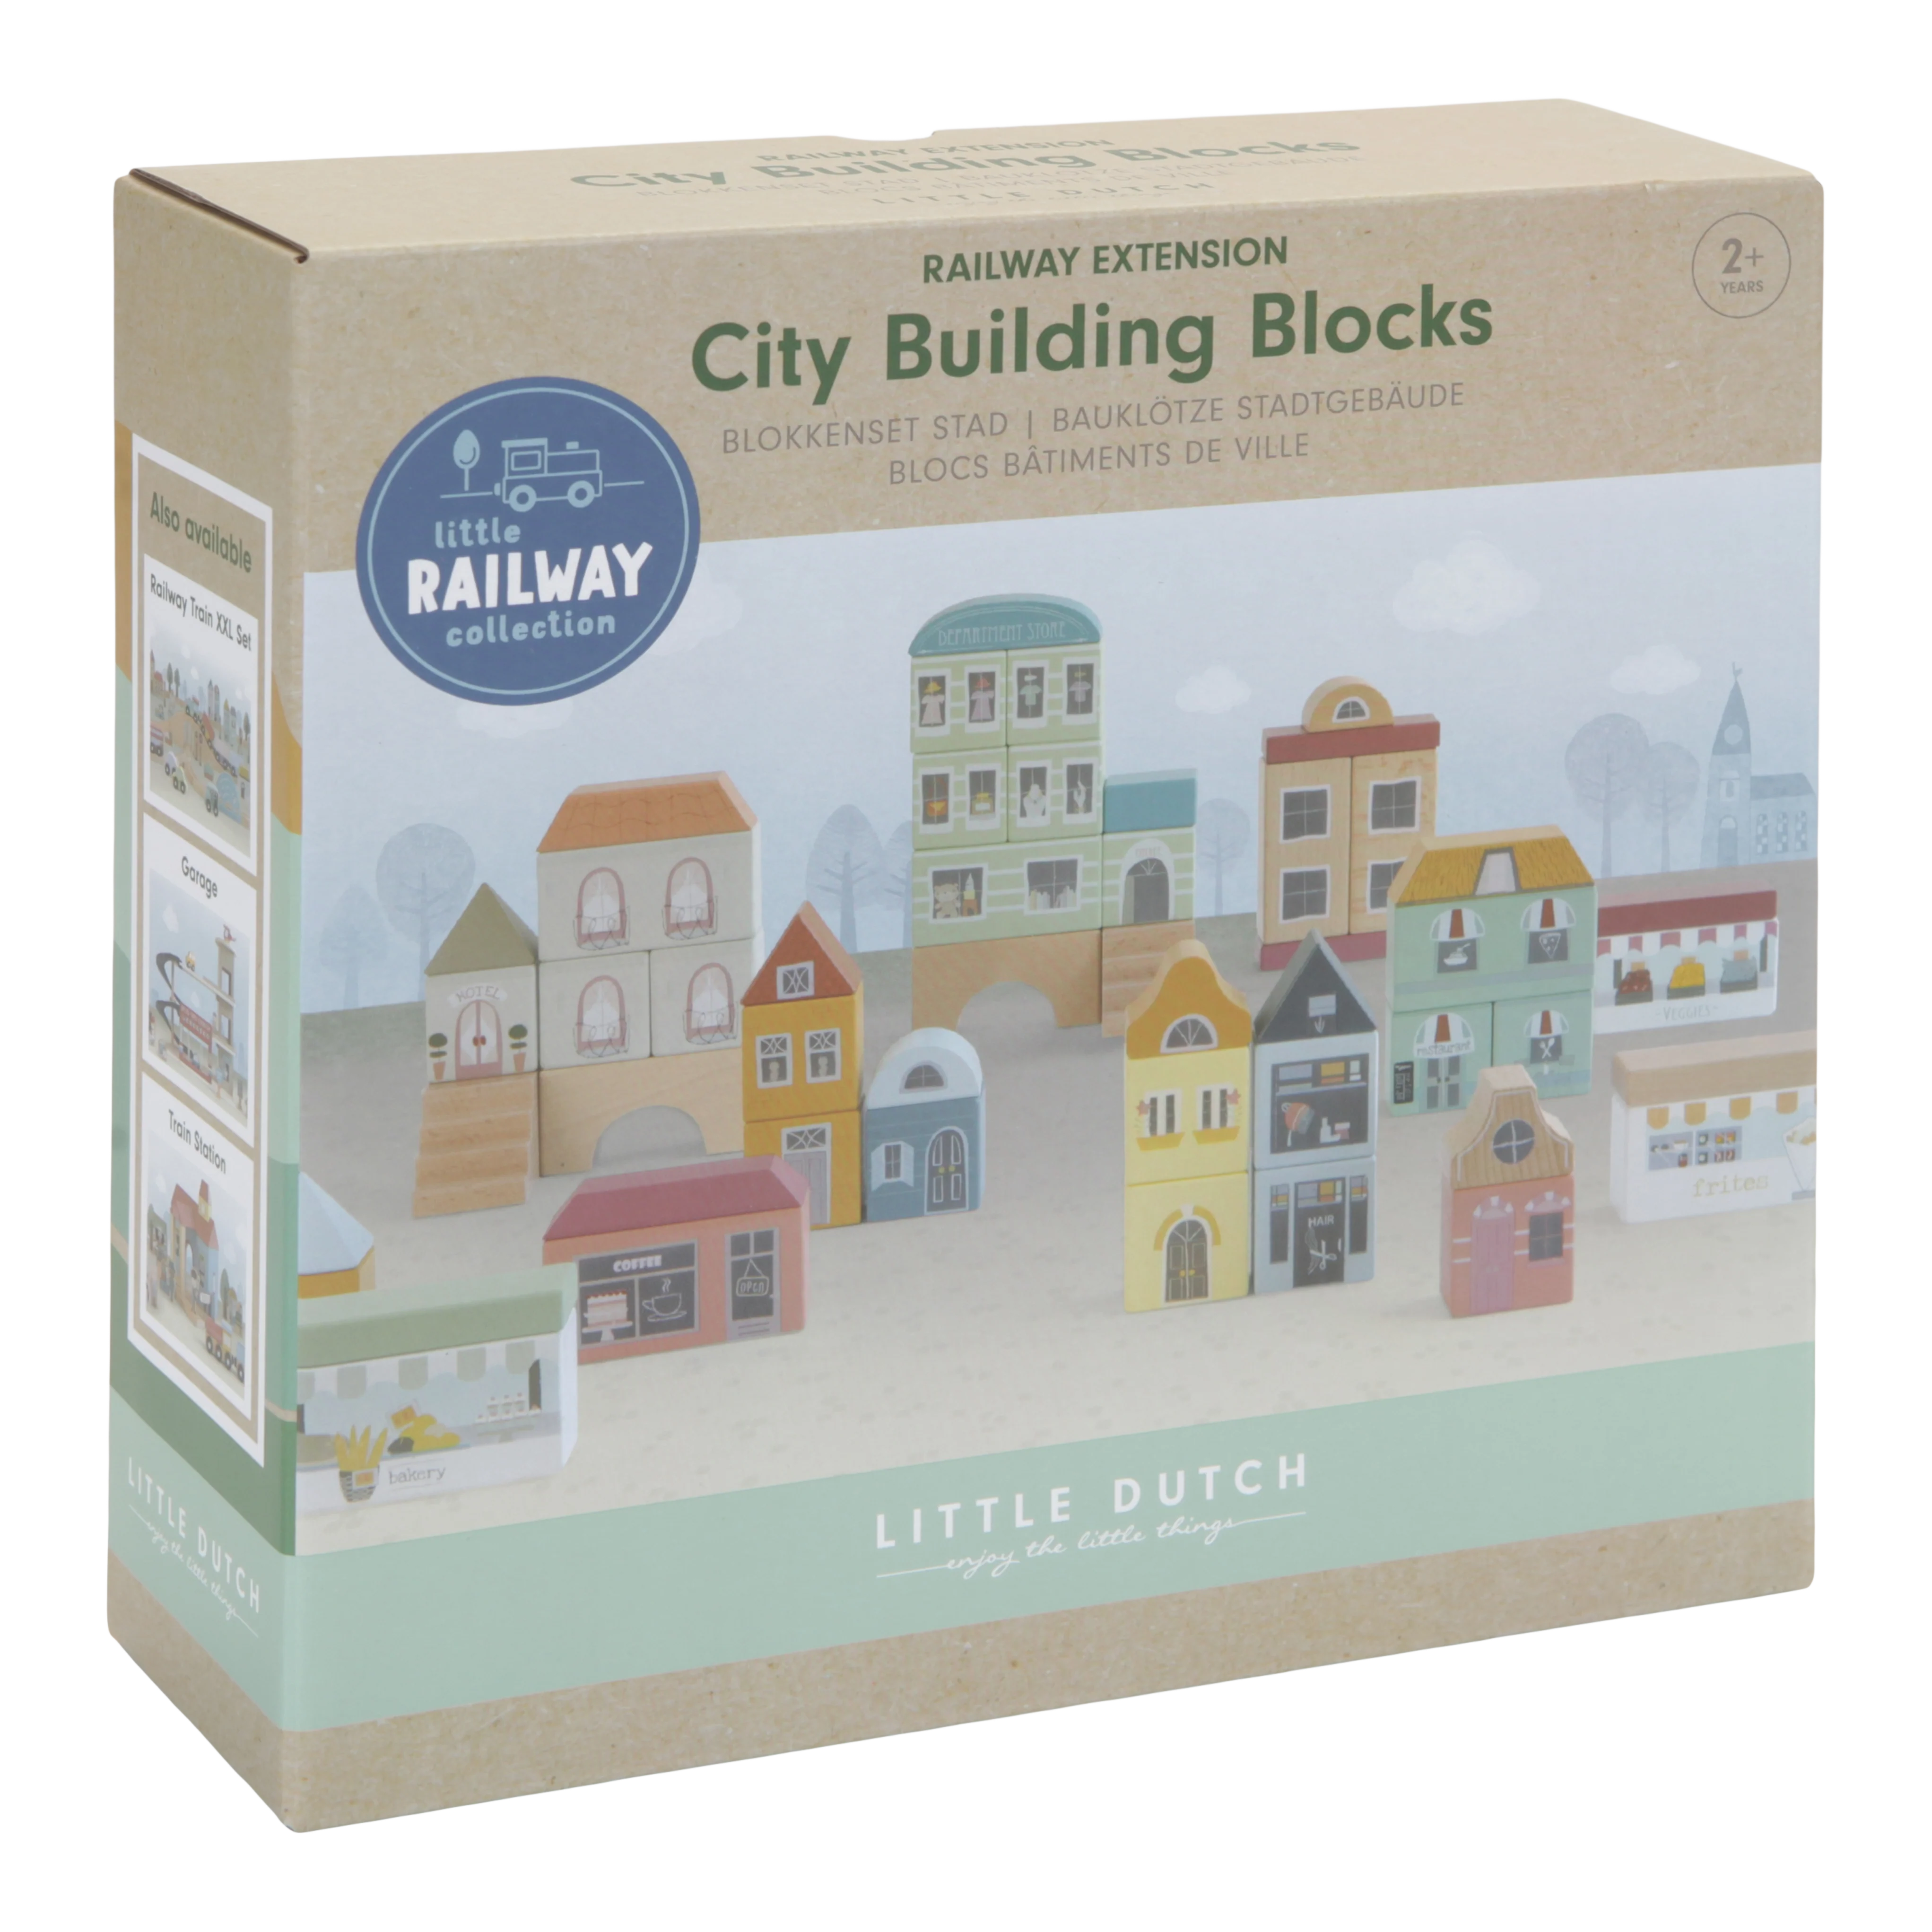 Little Dutch Railway Extension City Building Blocks